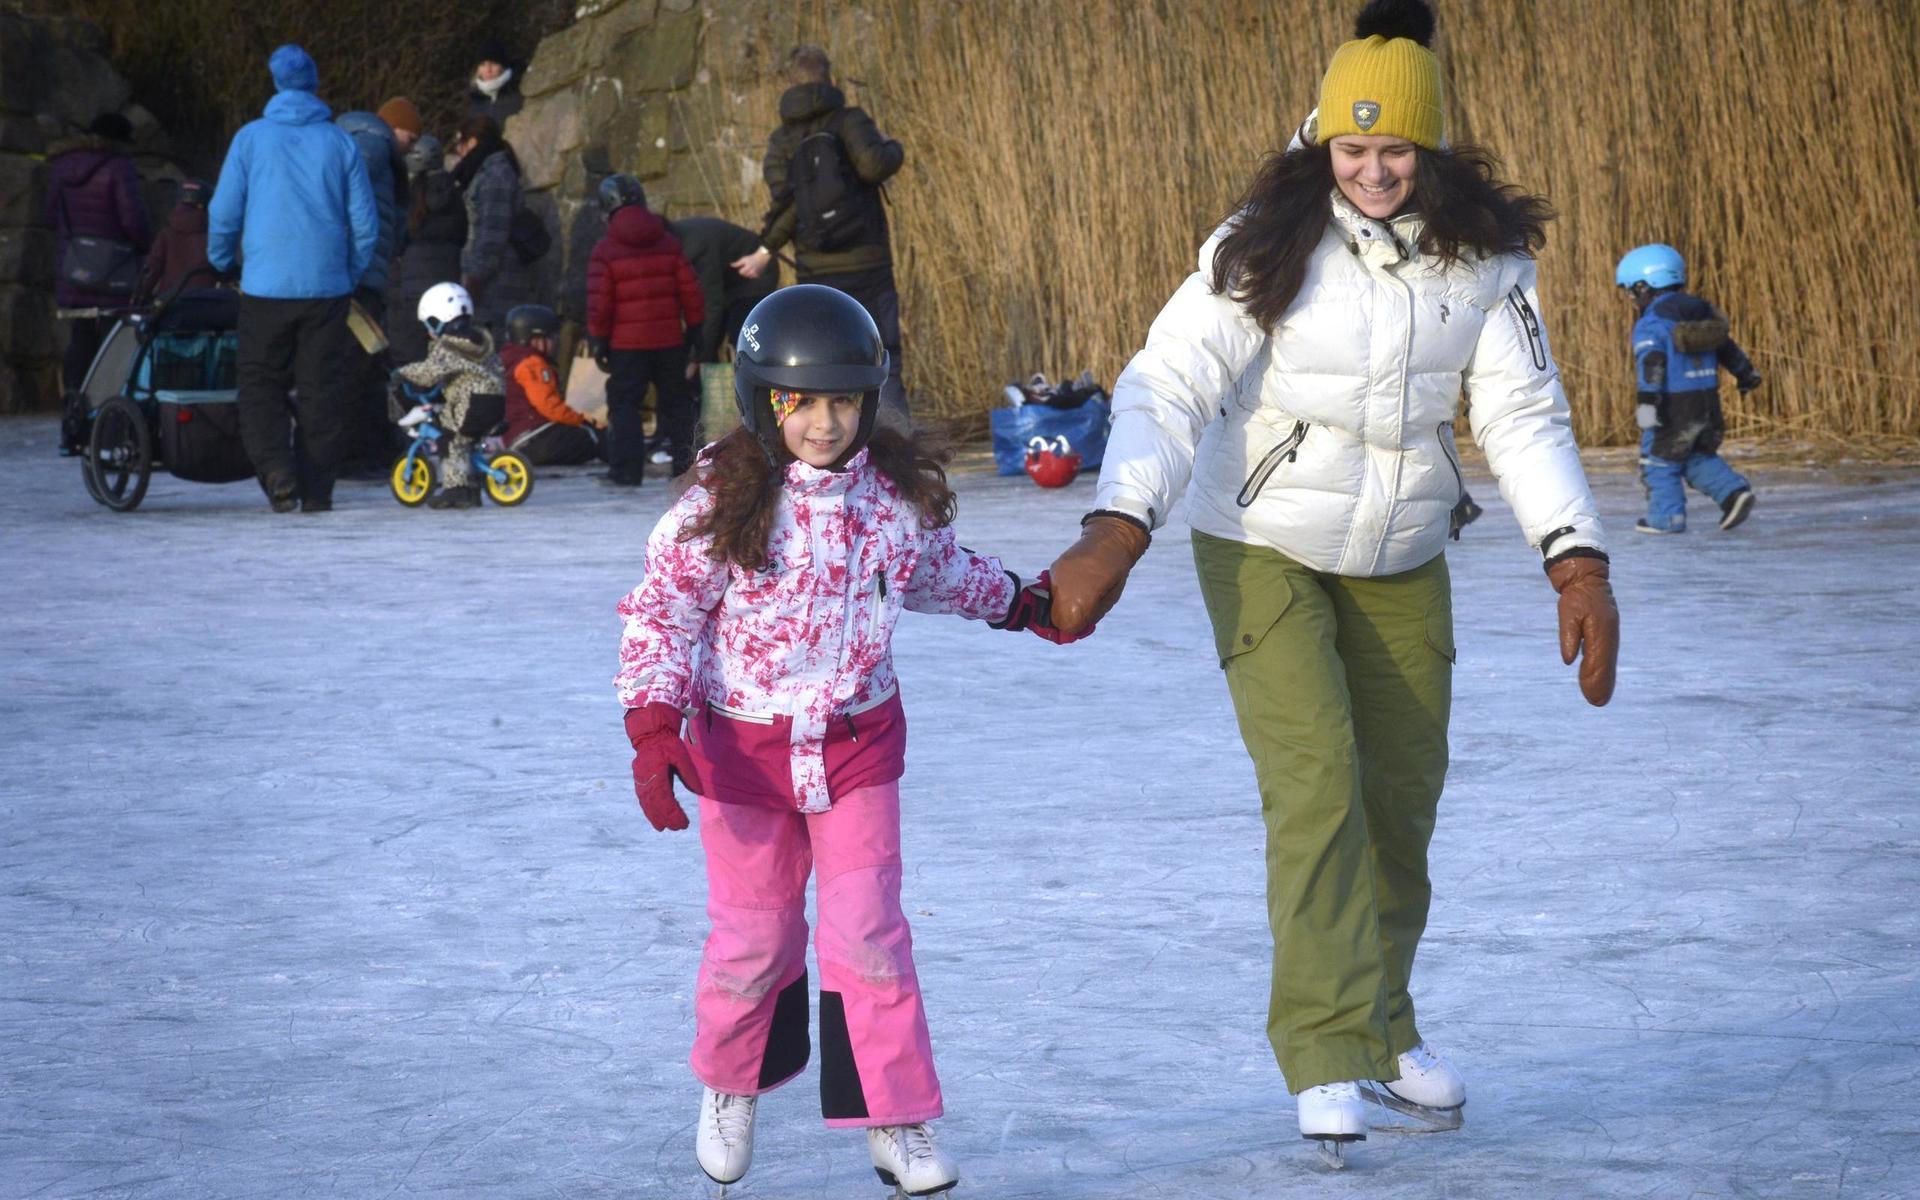 Skridskoåkning på Vallgraven. Nika och Julia Khamatova gillar alla vinteraktiviteter och åkte för andra gången i vinter på vallgraven vid Fästningen.